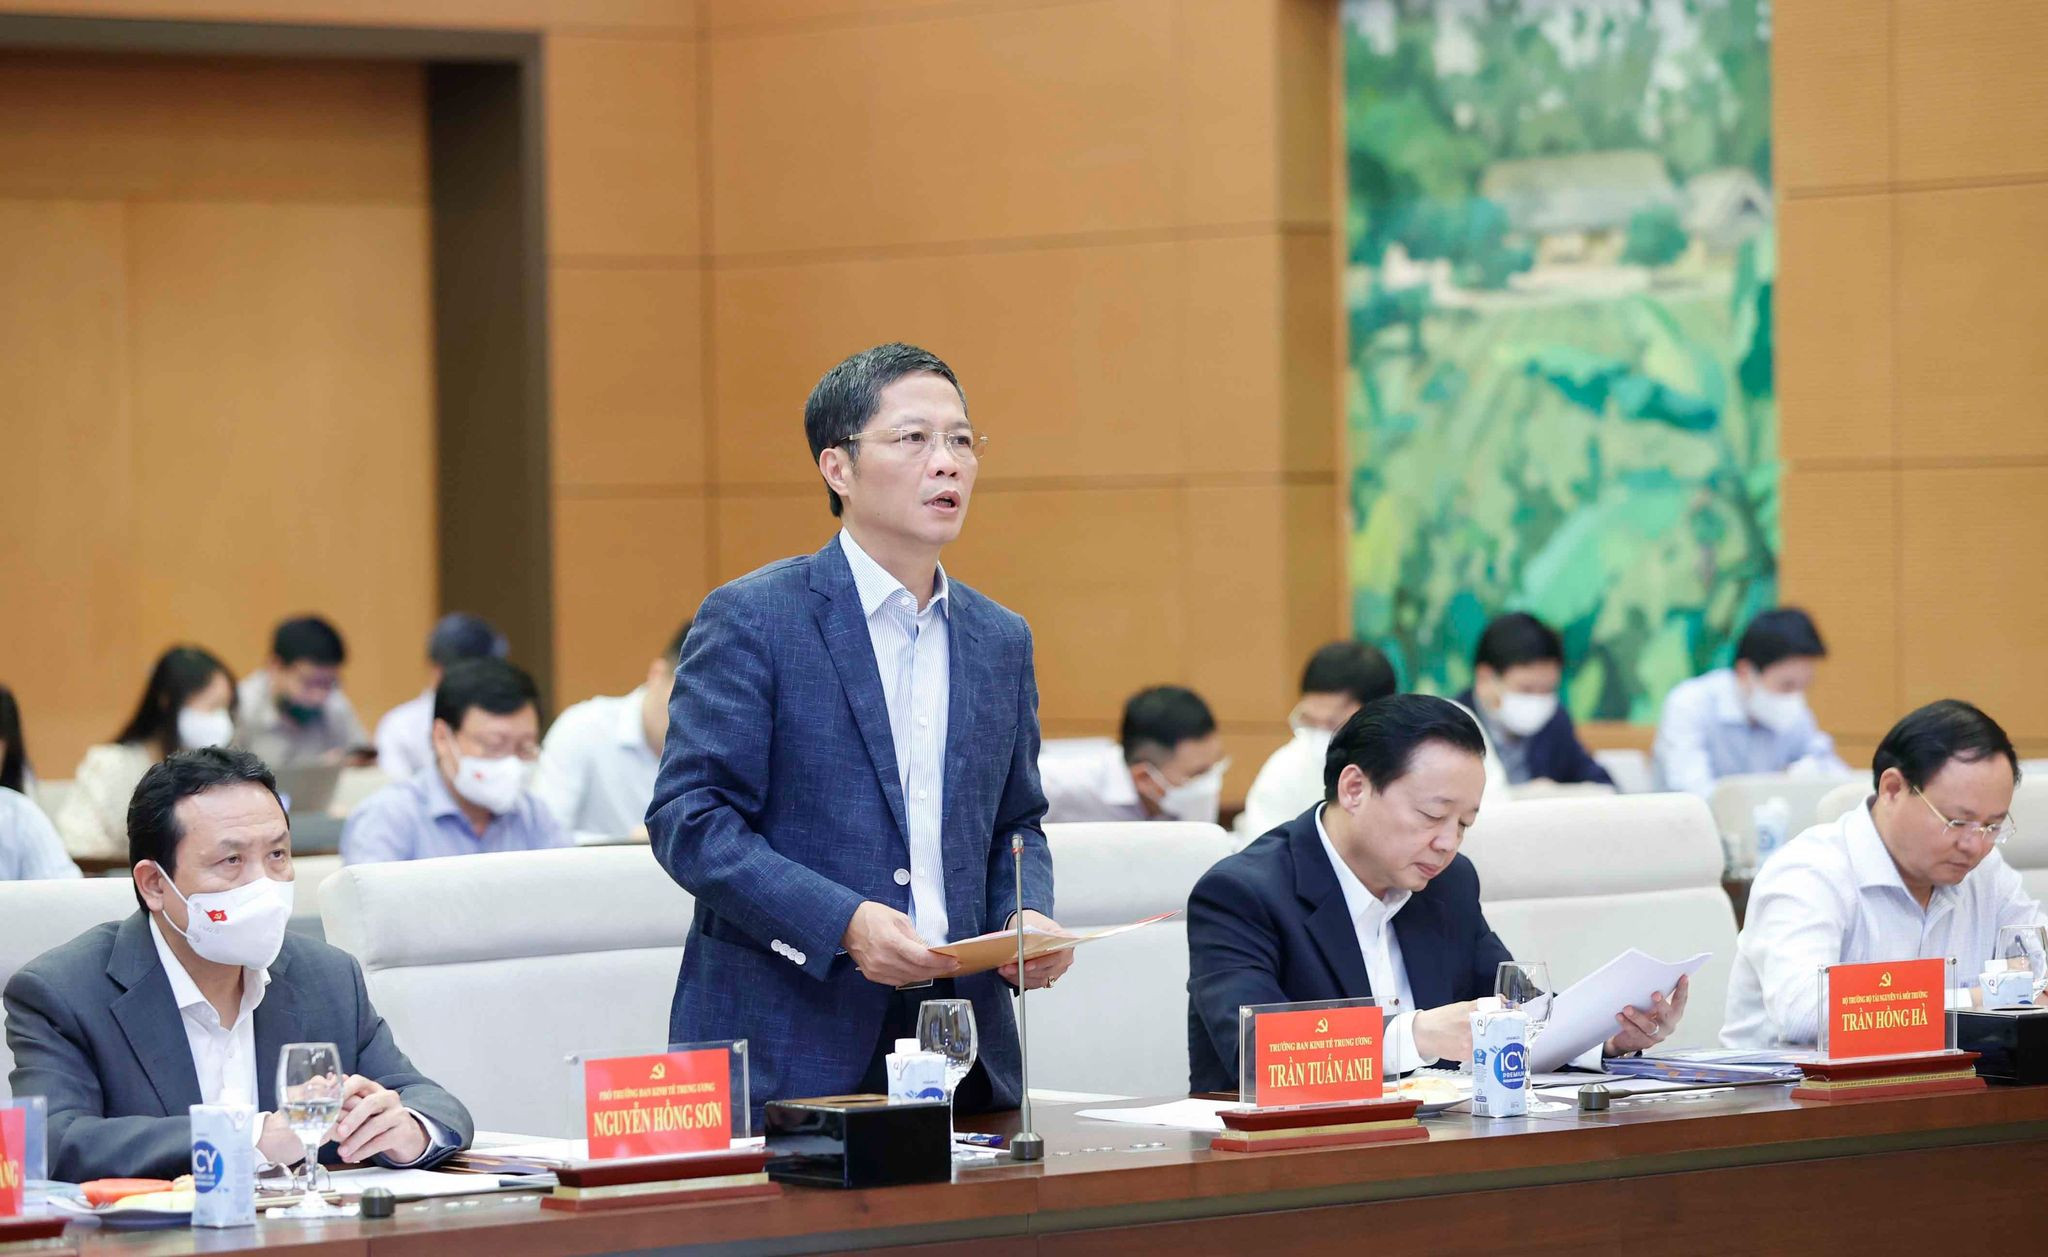 Bộ Chính trị sẽ trình Trung ương Nghị quyết mới về đất đai - VietNamNet